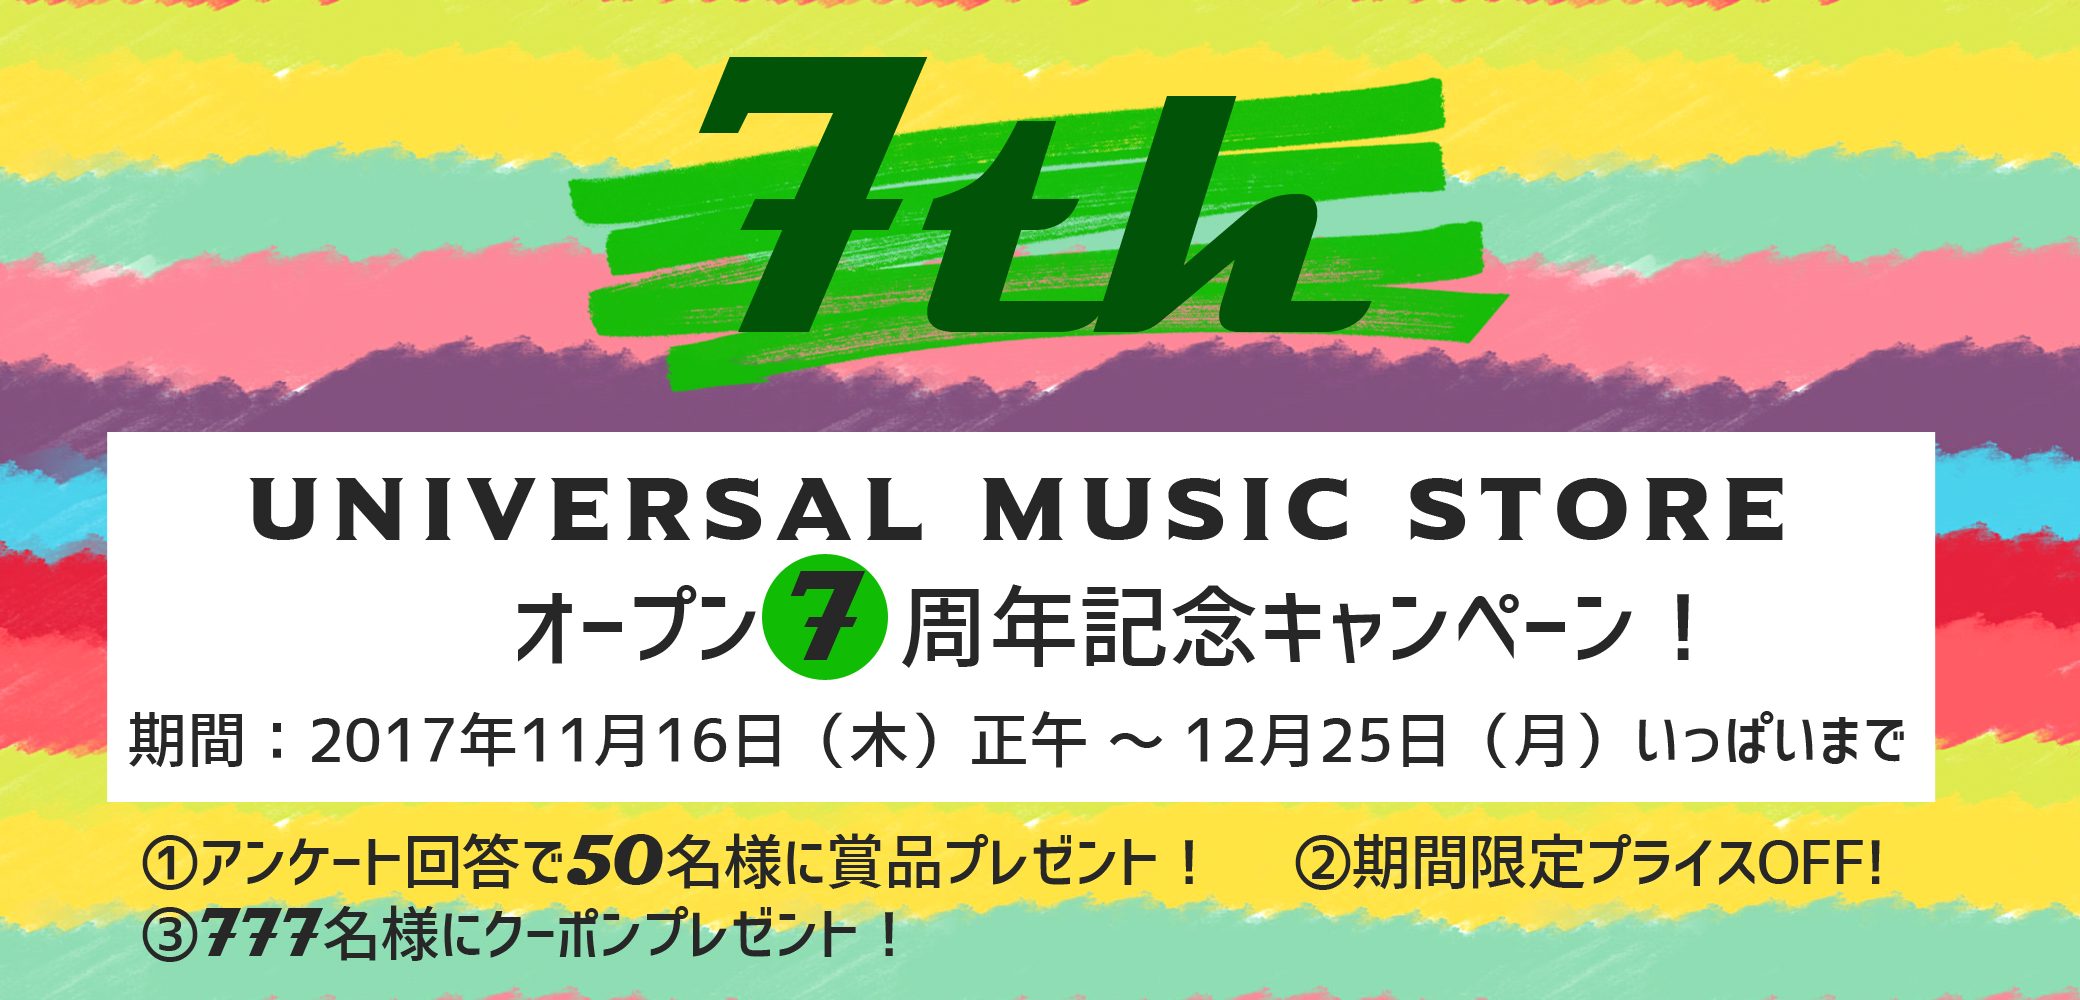 UNIVERSAL MUSIC STORE オープン7周年記念キャンペーン